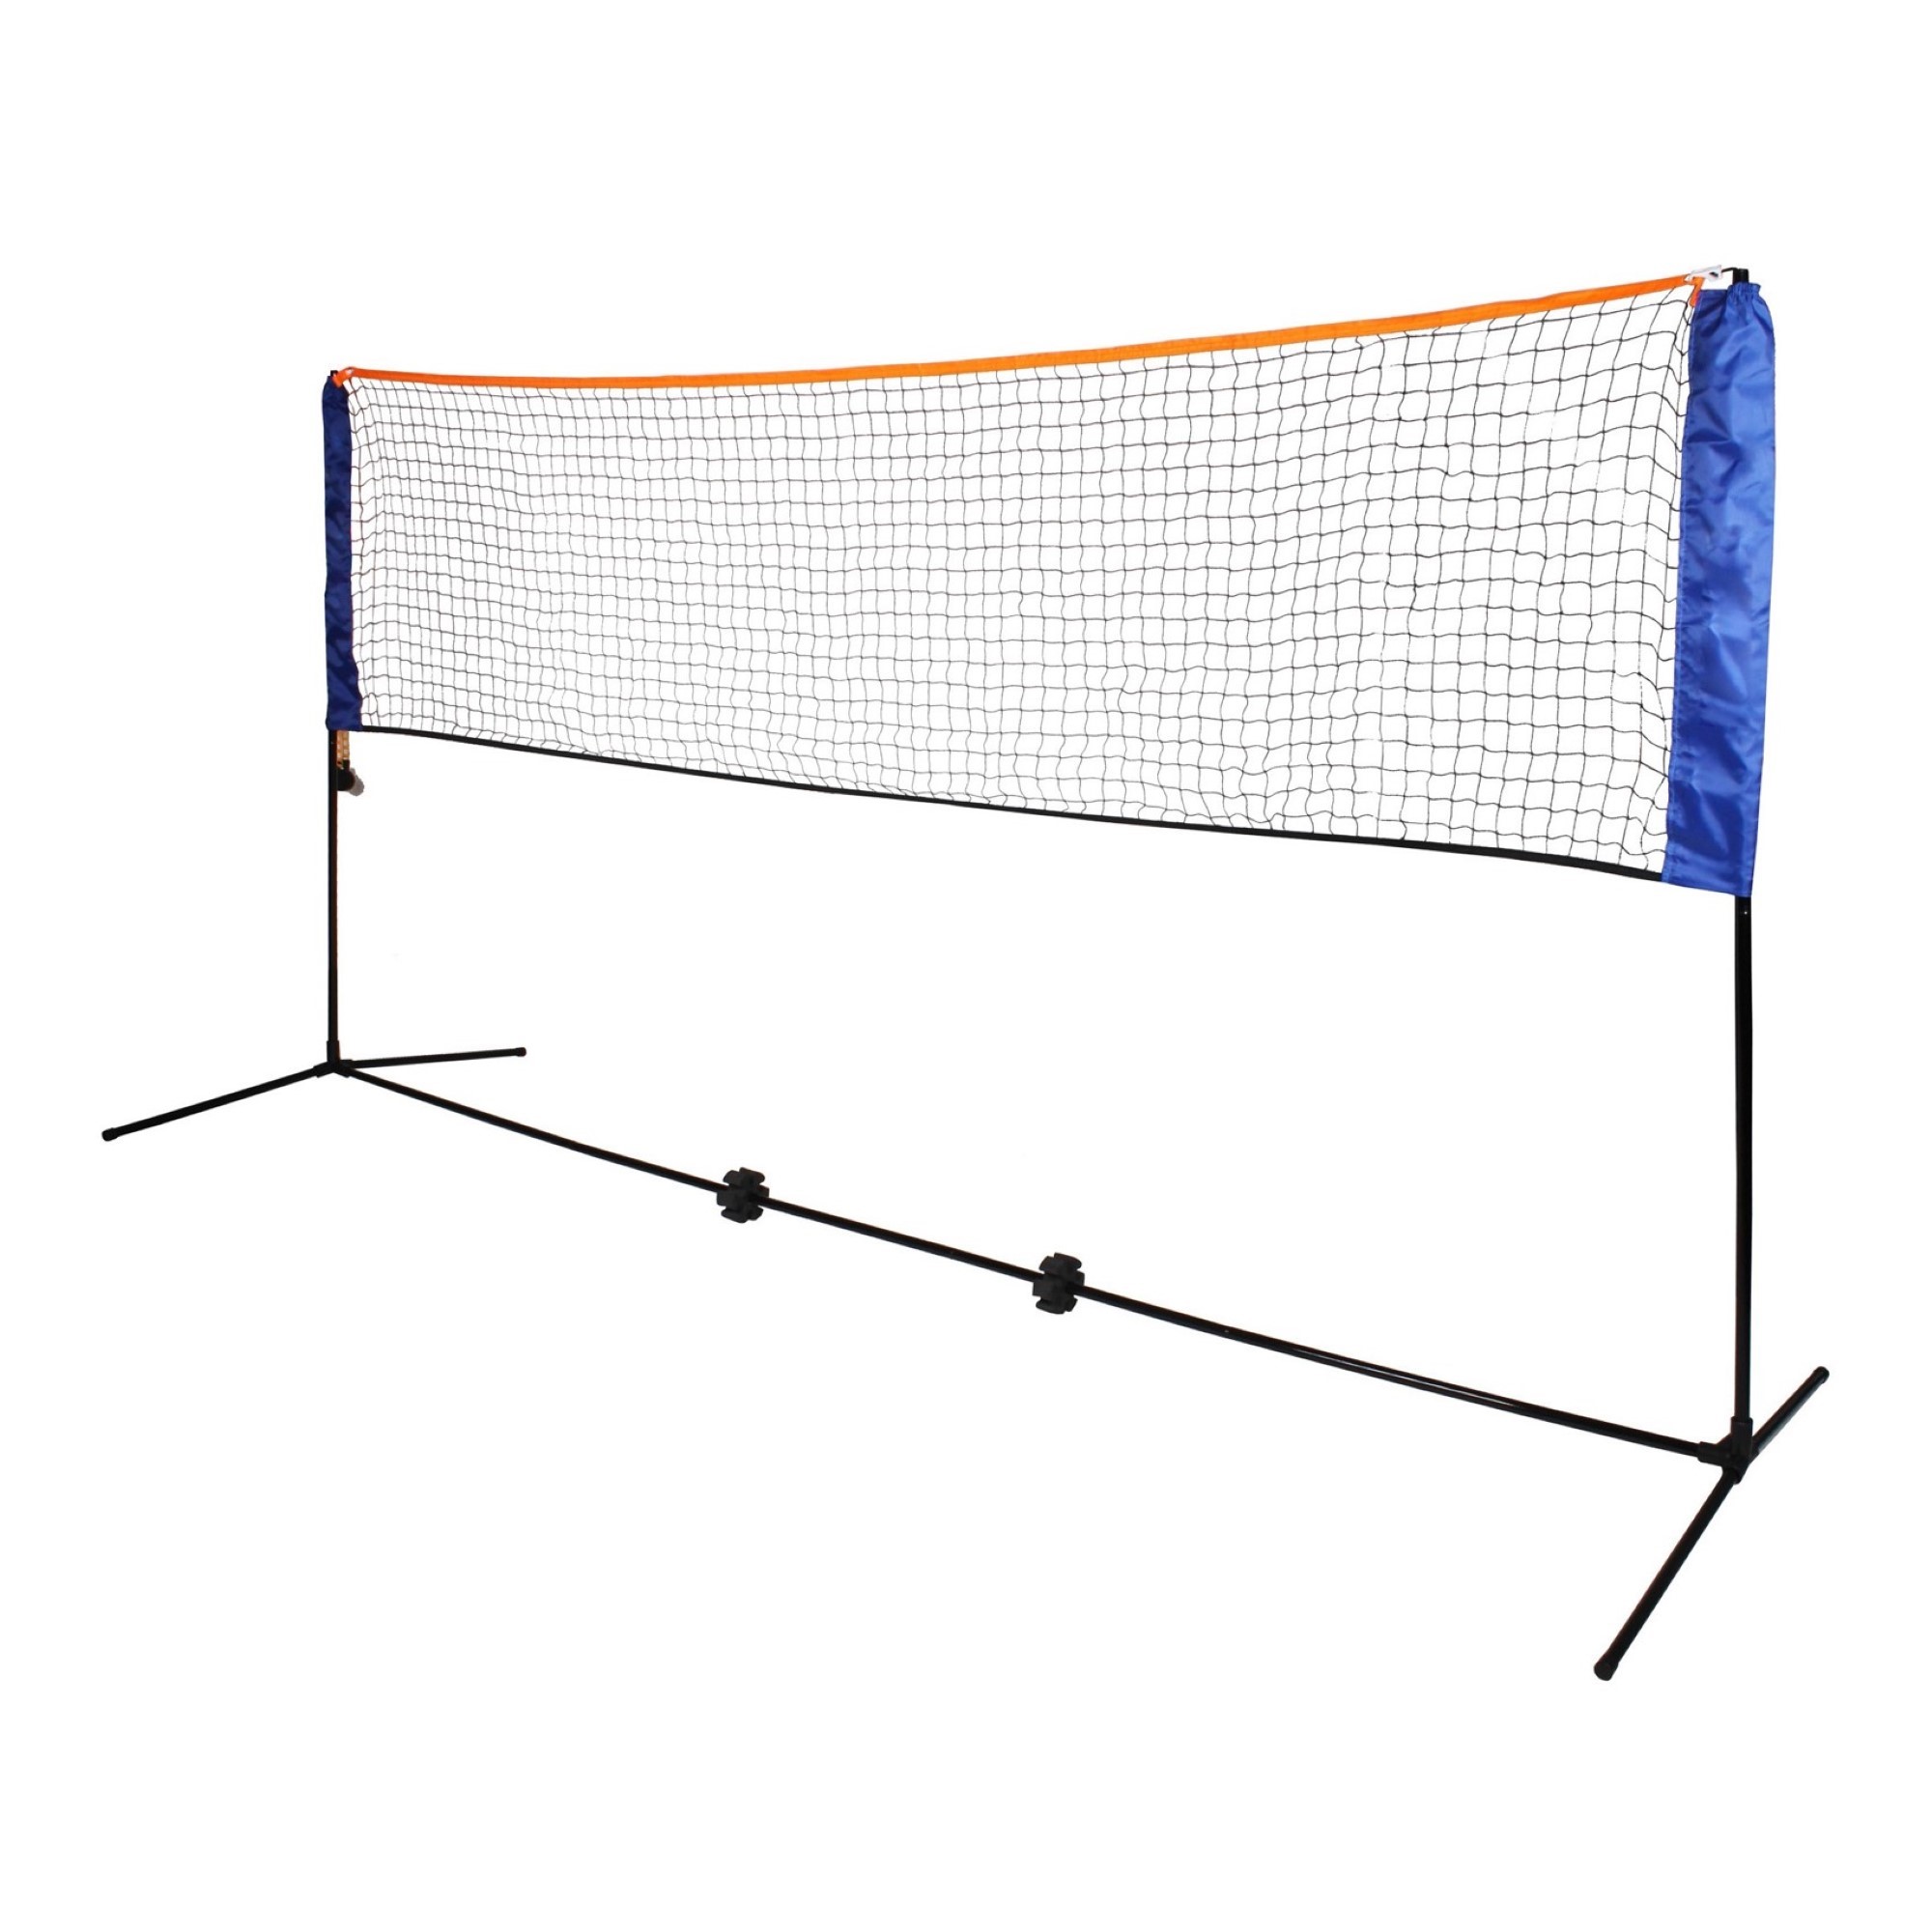 Portable Training Badminton Volleyball Tennis Net Outdoor Garden Sports Durable 